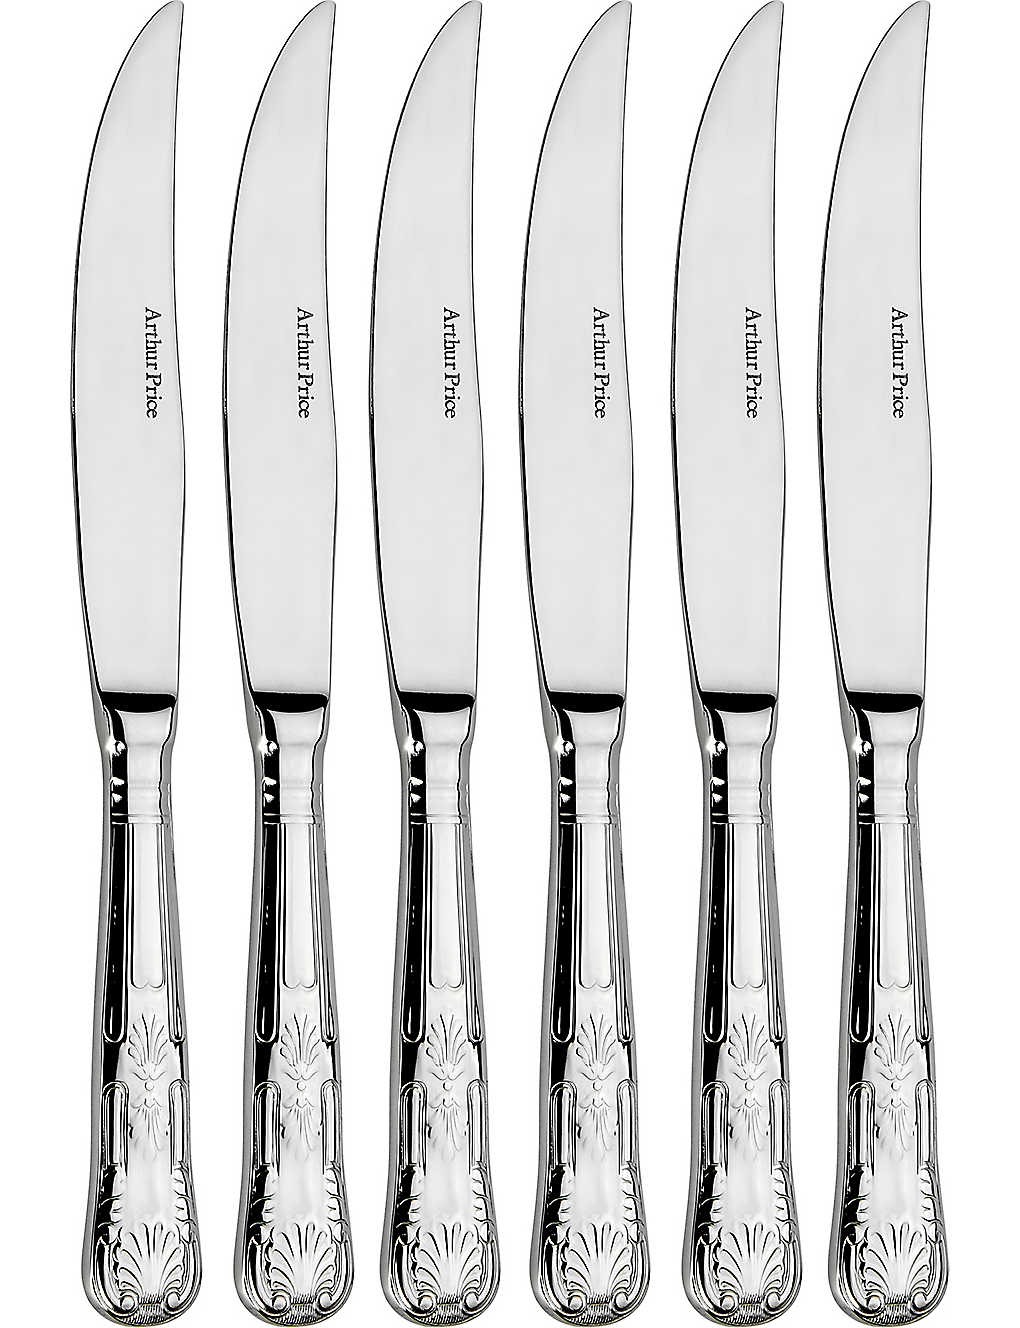 Arthur Price Kings Set Of 6 Stainless Steel Steak Knives